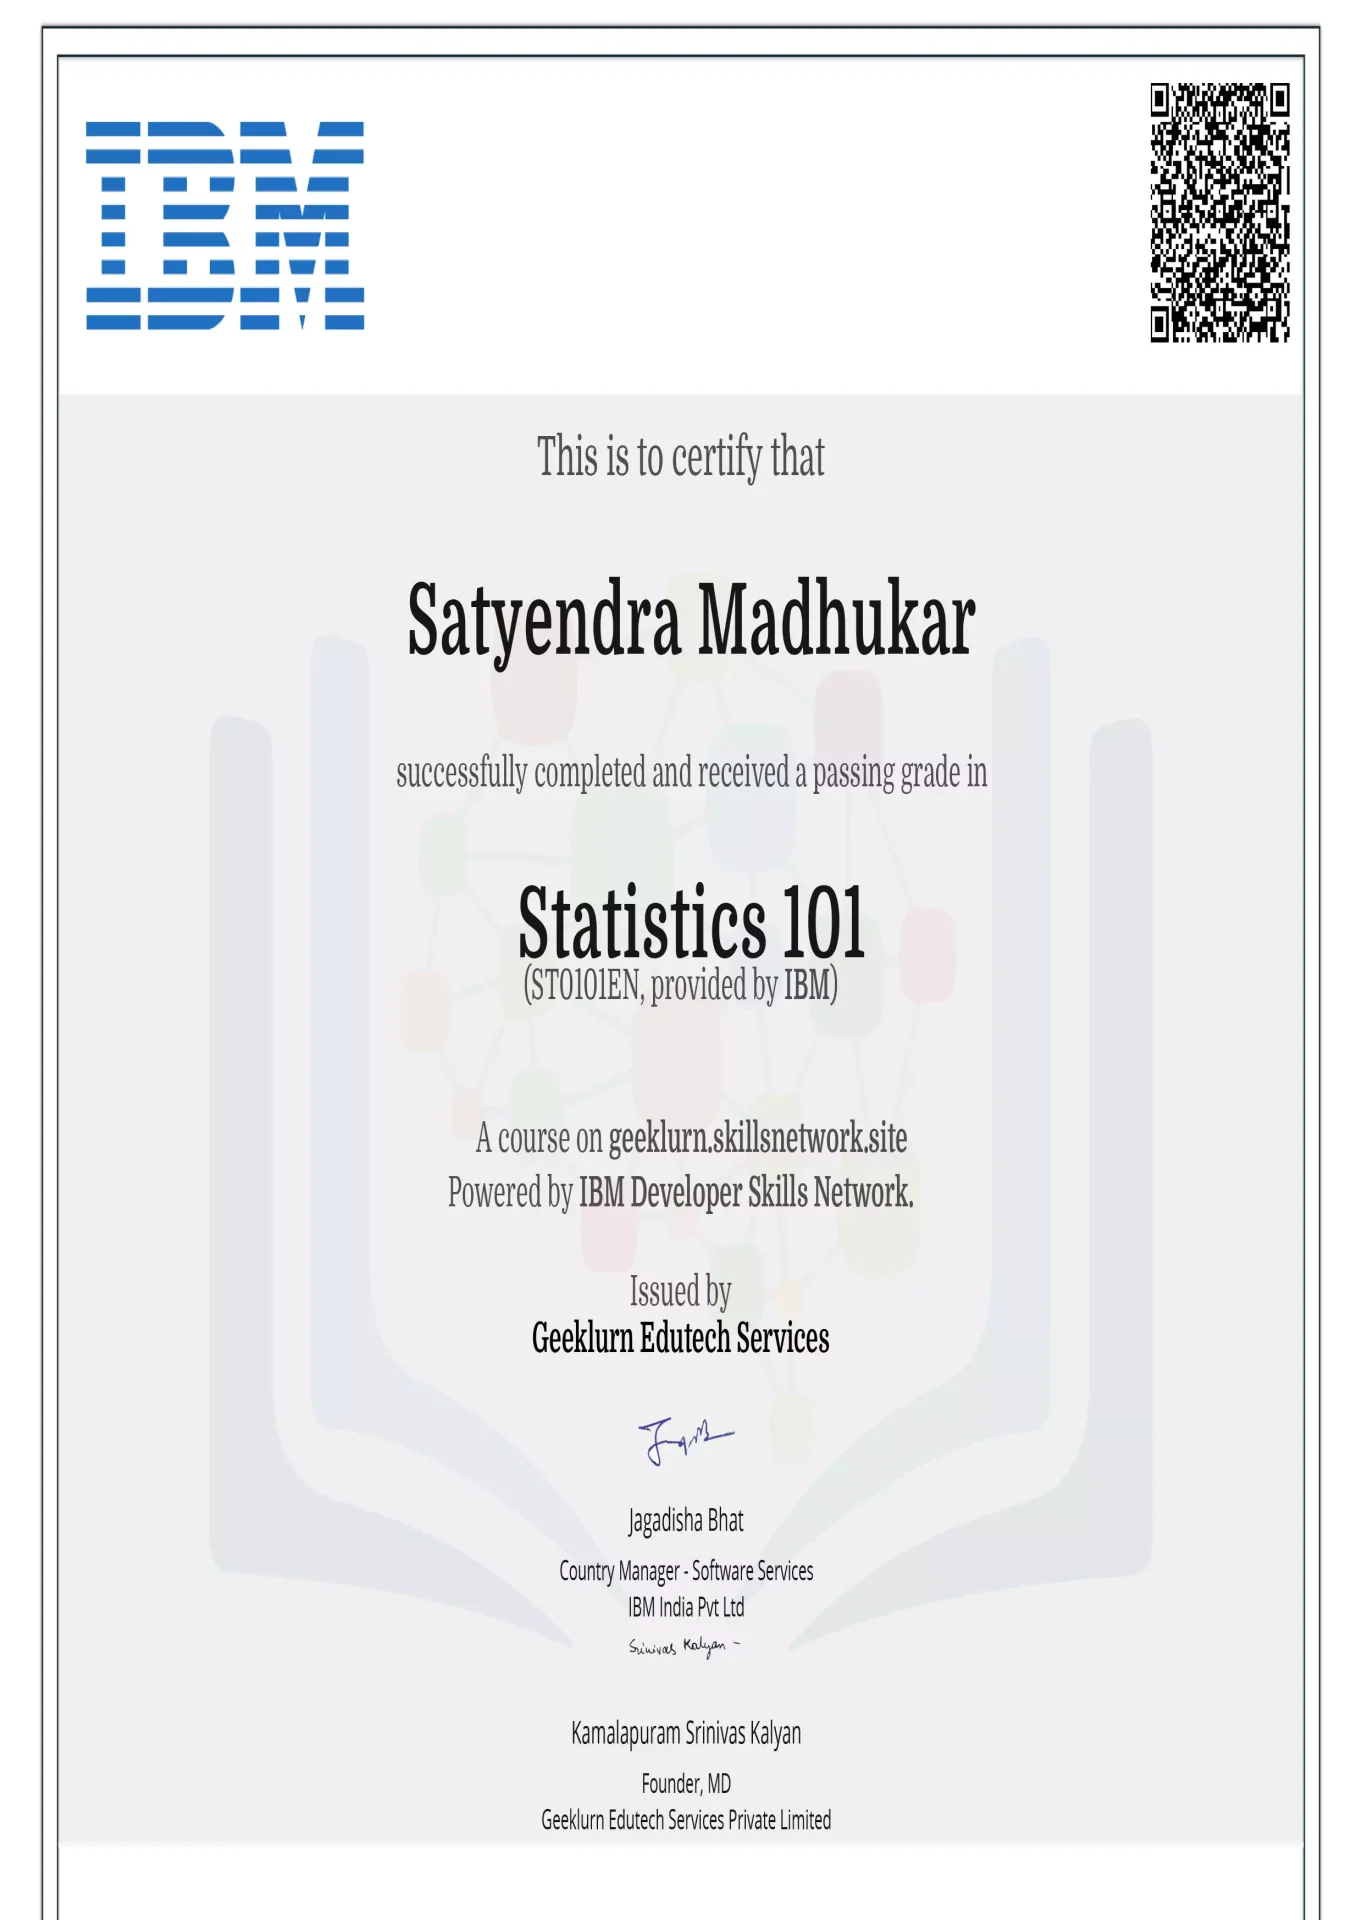 ibm-st0101en-certificate-geeklurn-edutech-services-2